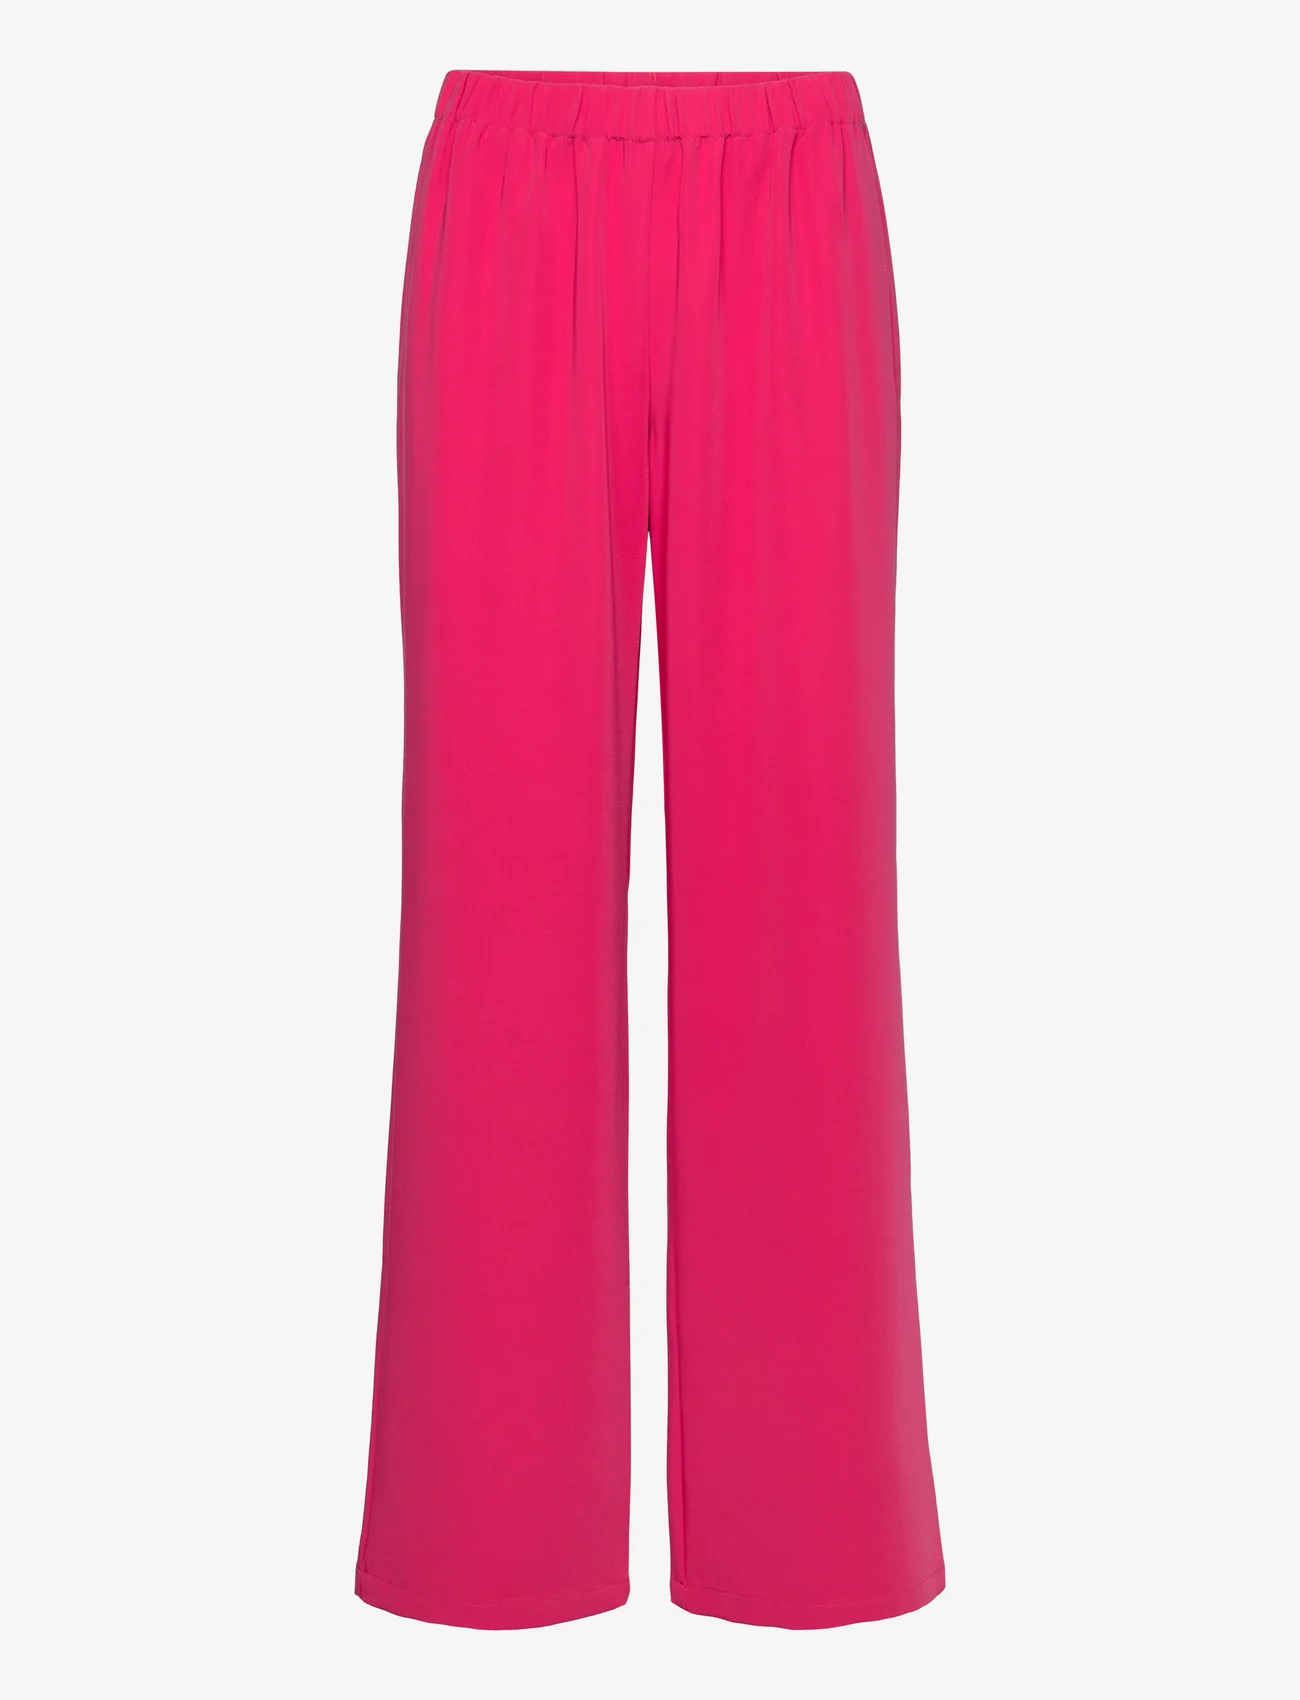 Modström - PerryMD pants - vakarėlių drabužiai išparduotuvių kainomis - virtual pink - 0